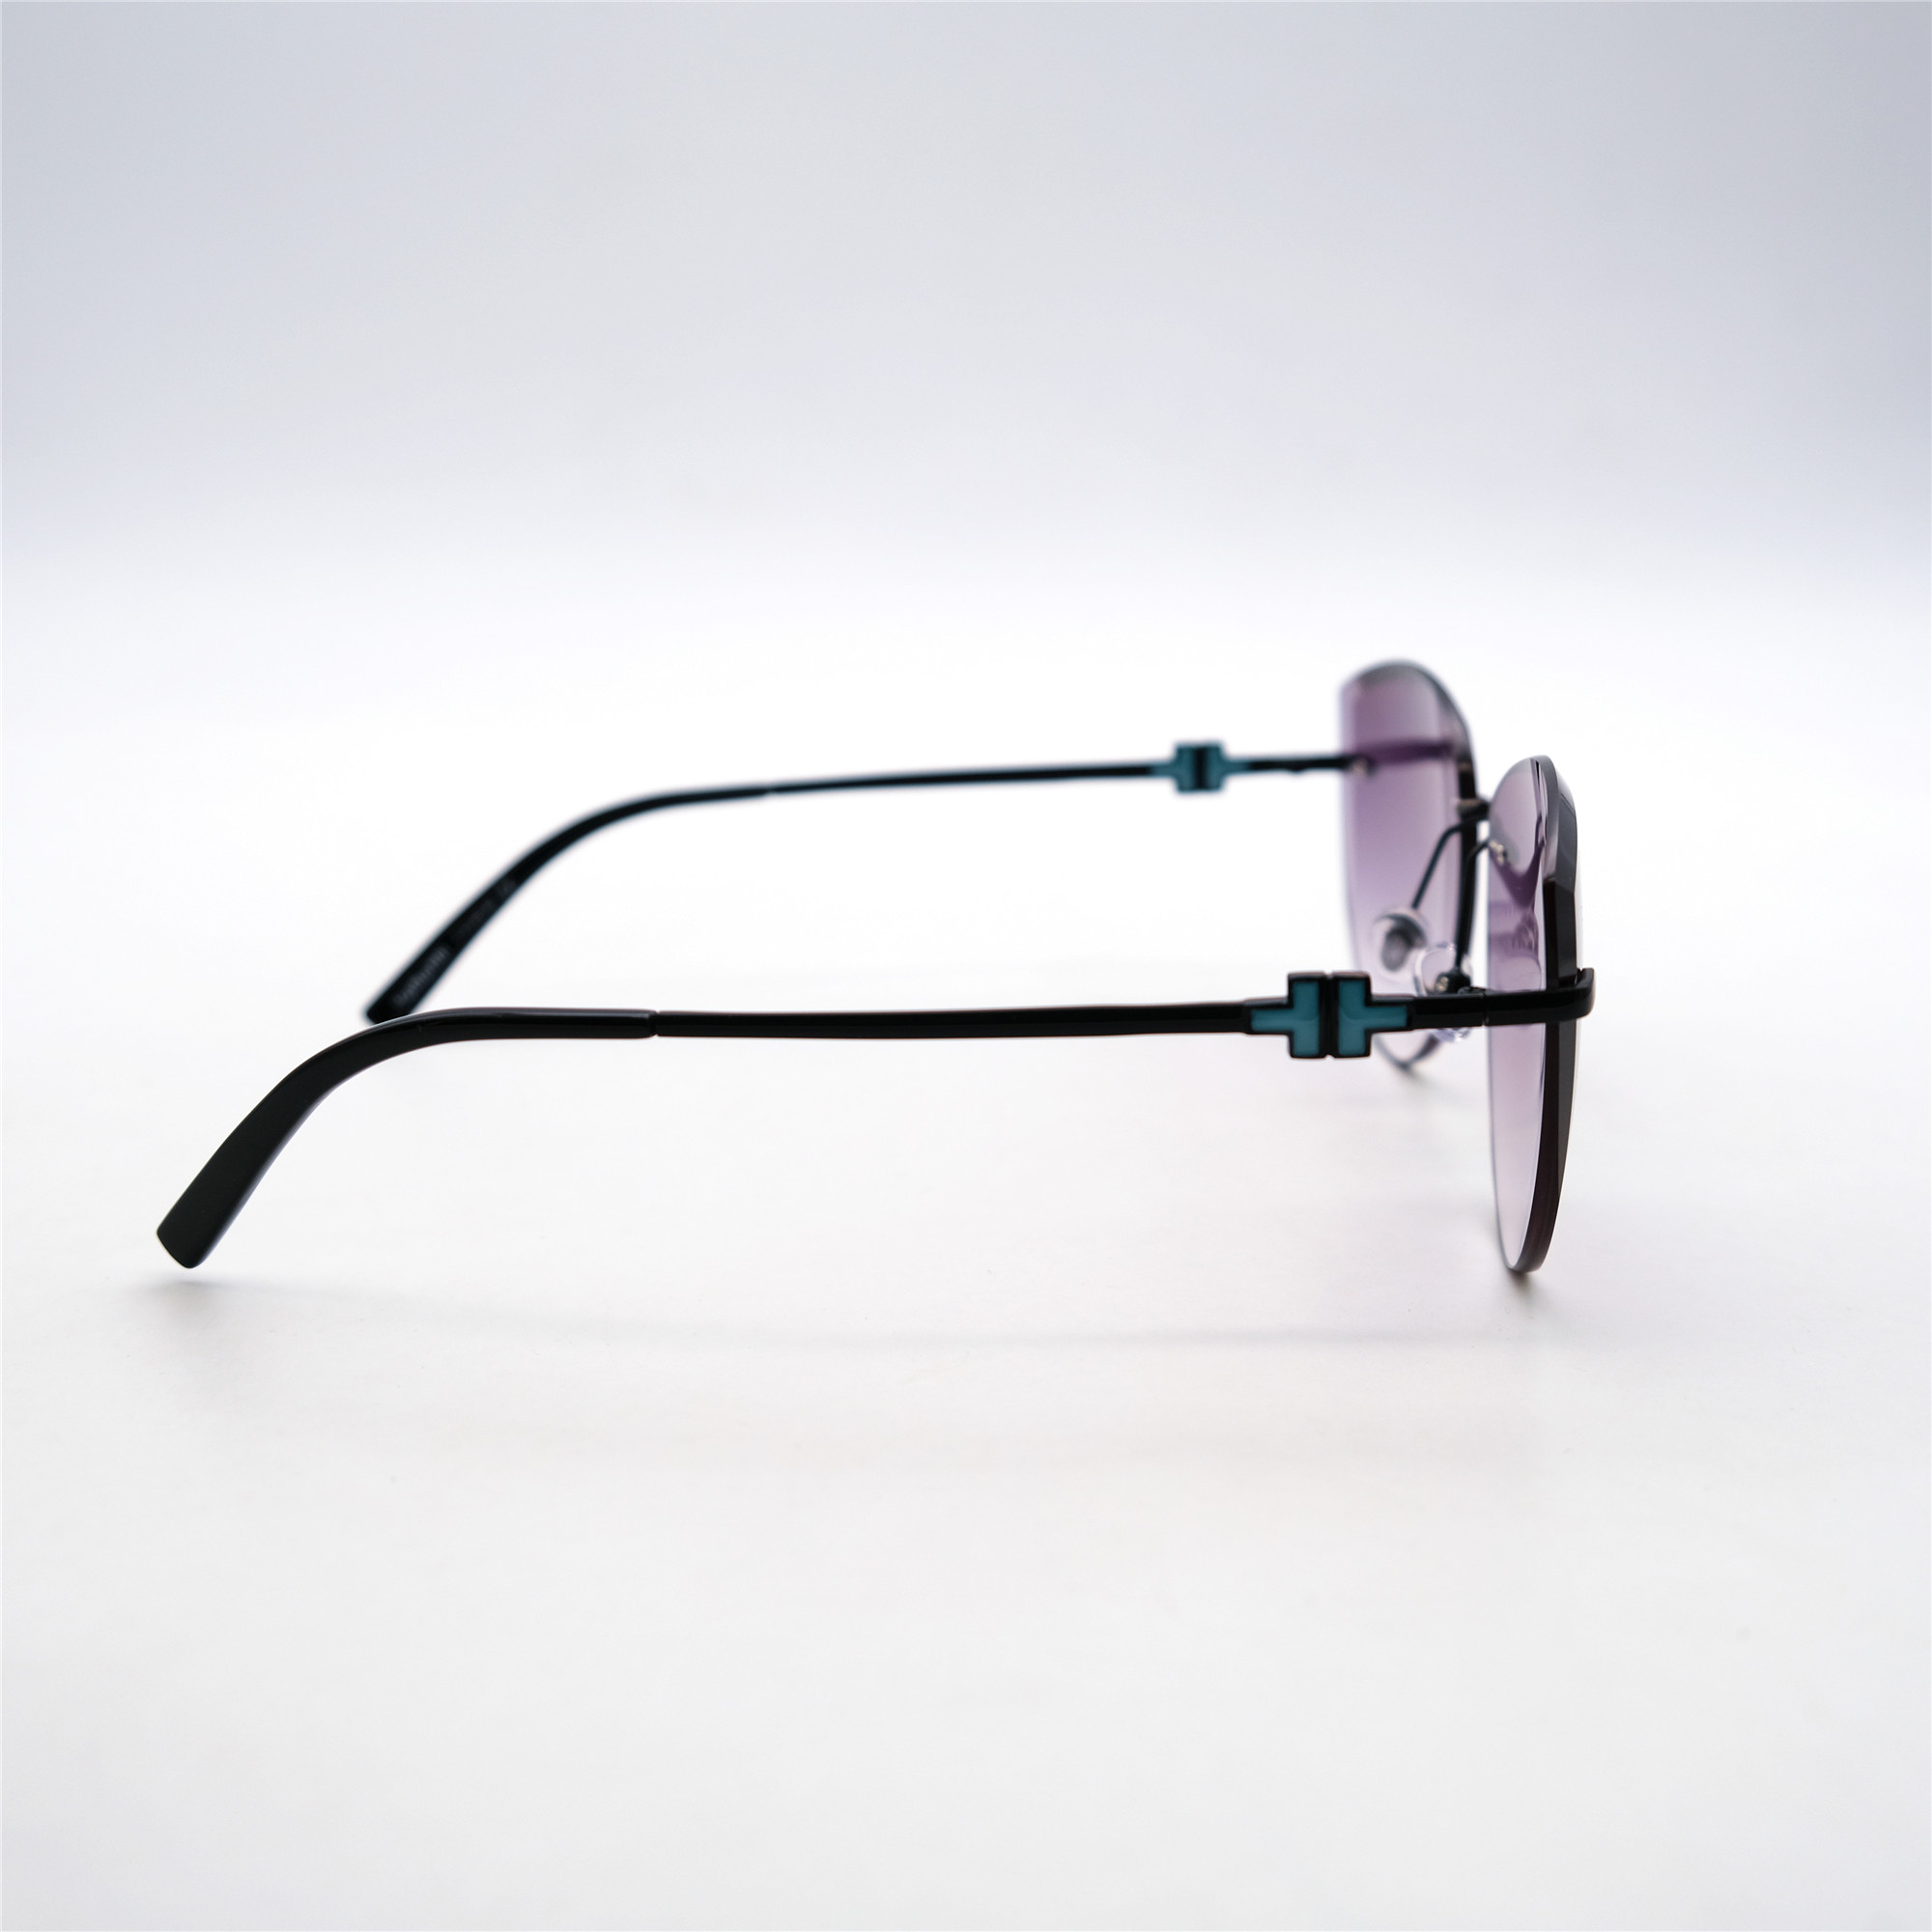  Солнцезащитные очки картинка Женские Yamanni  Авиаторы D2503-C9-124 